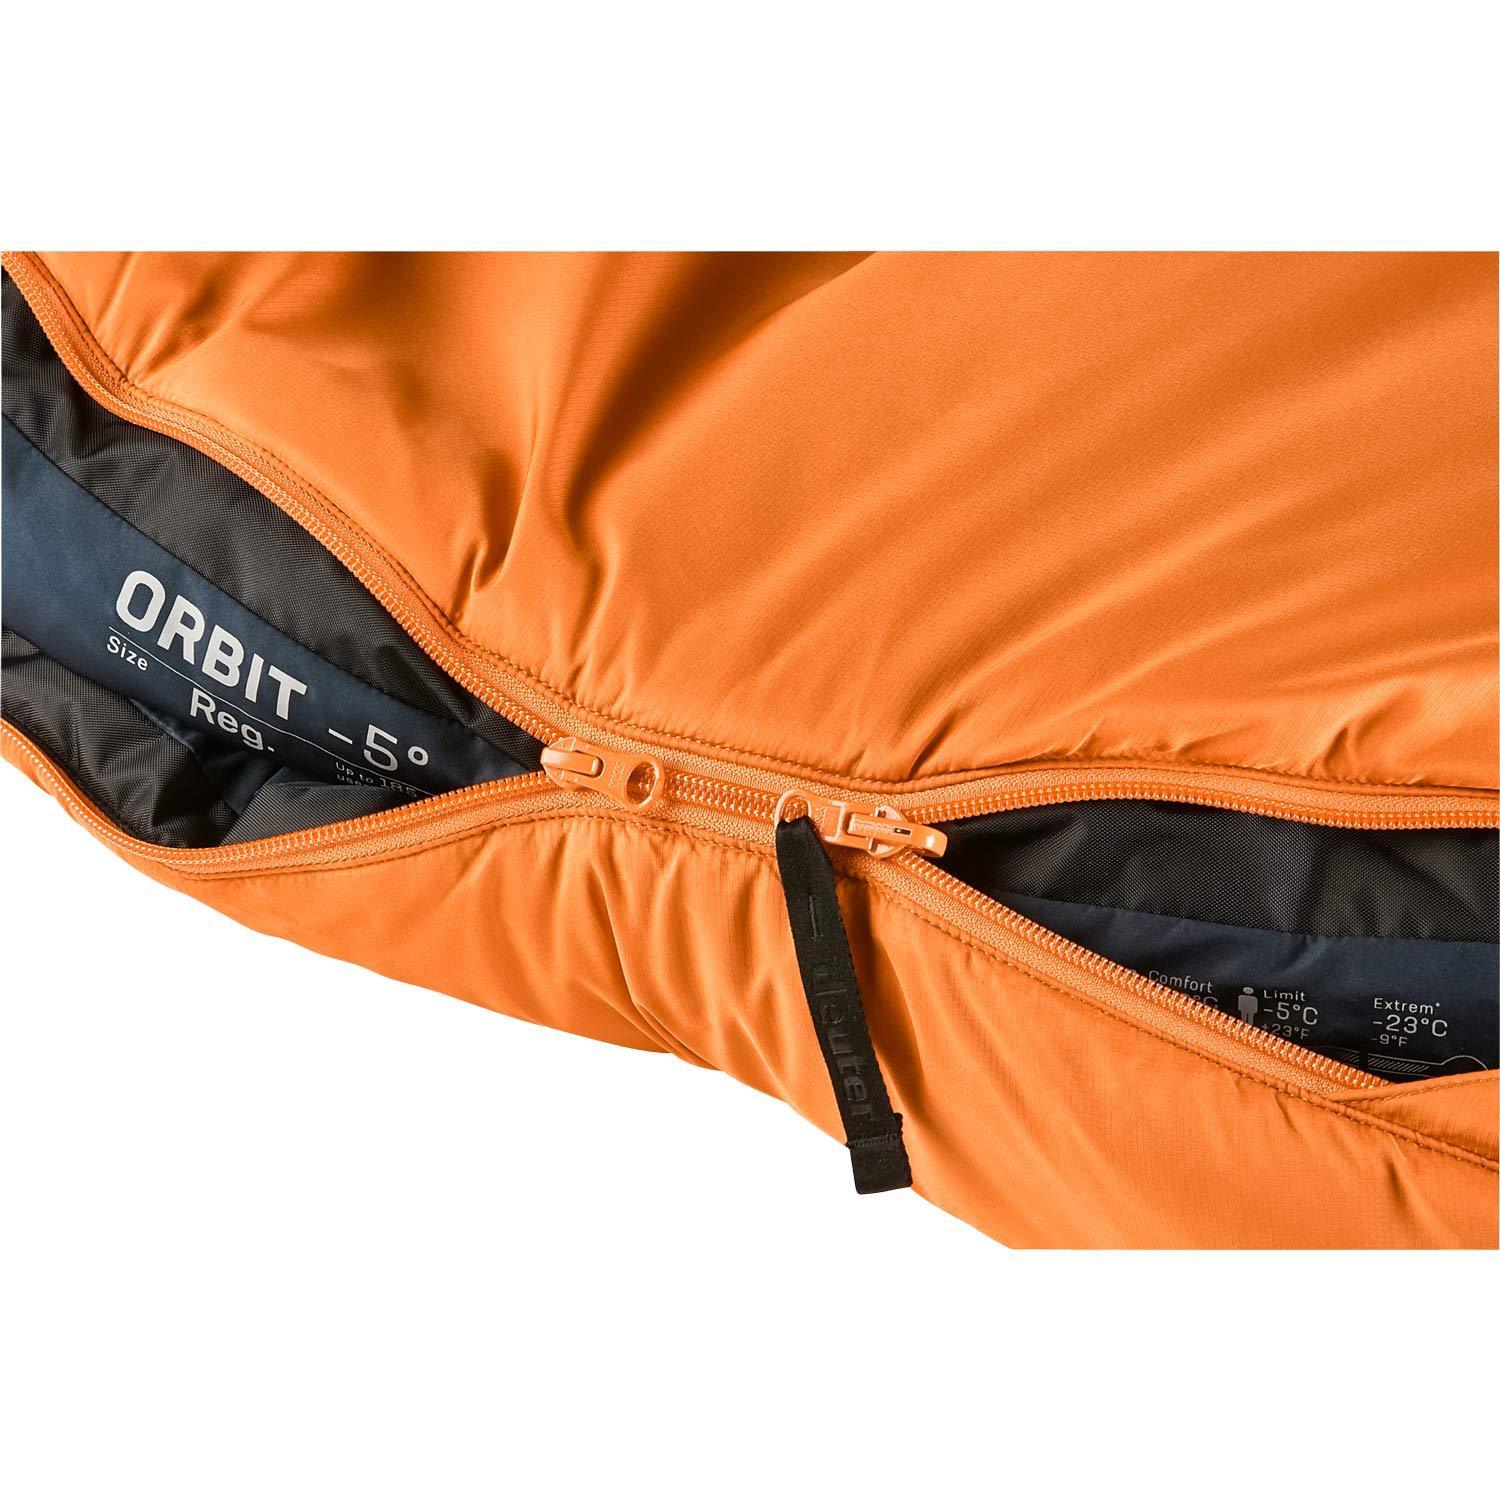 Deuter ORBIT -5° Kunstfaser-Schlafsack